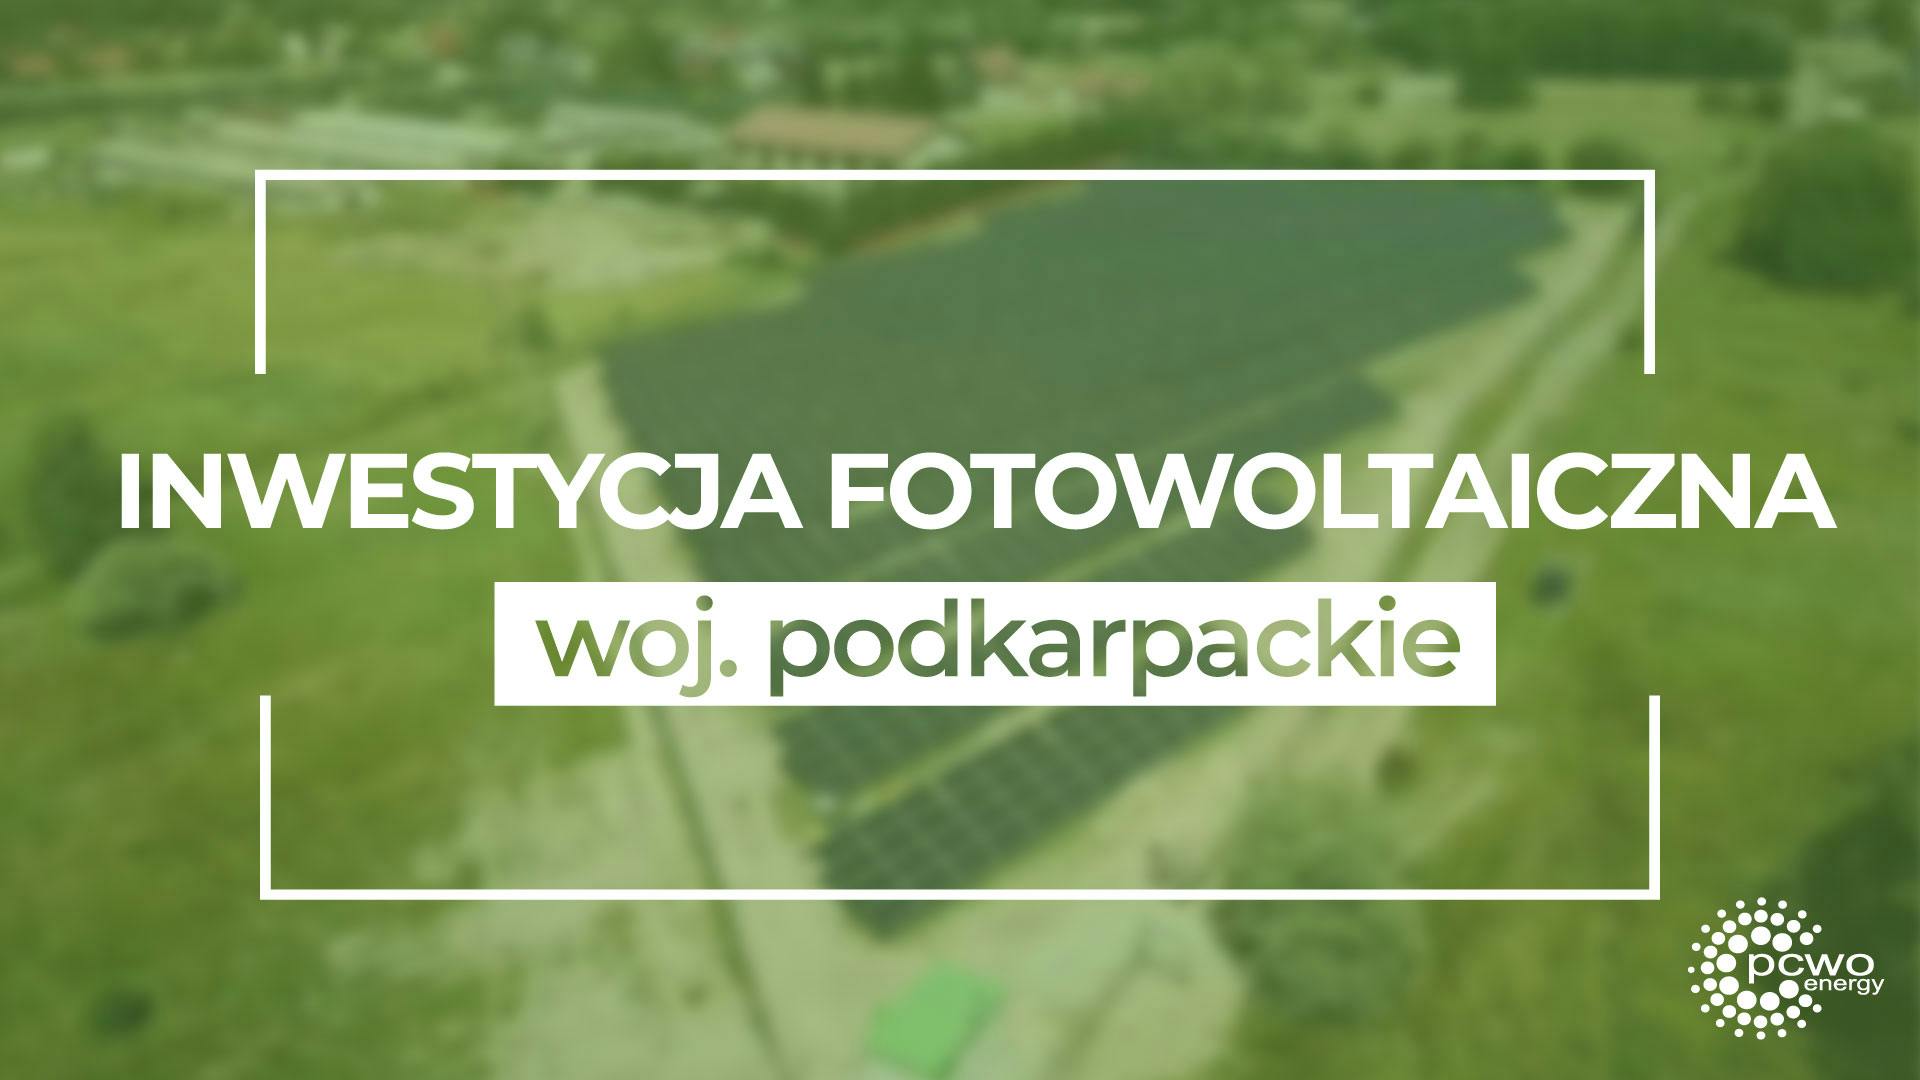 Cover Image for Farma fotowoltaiczna w woj. podkarpackim